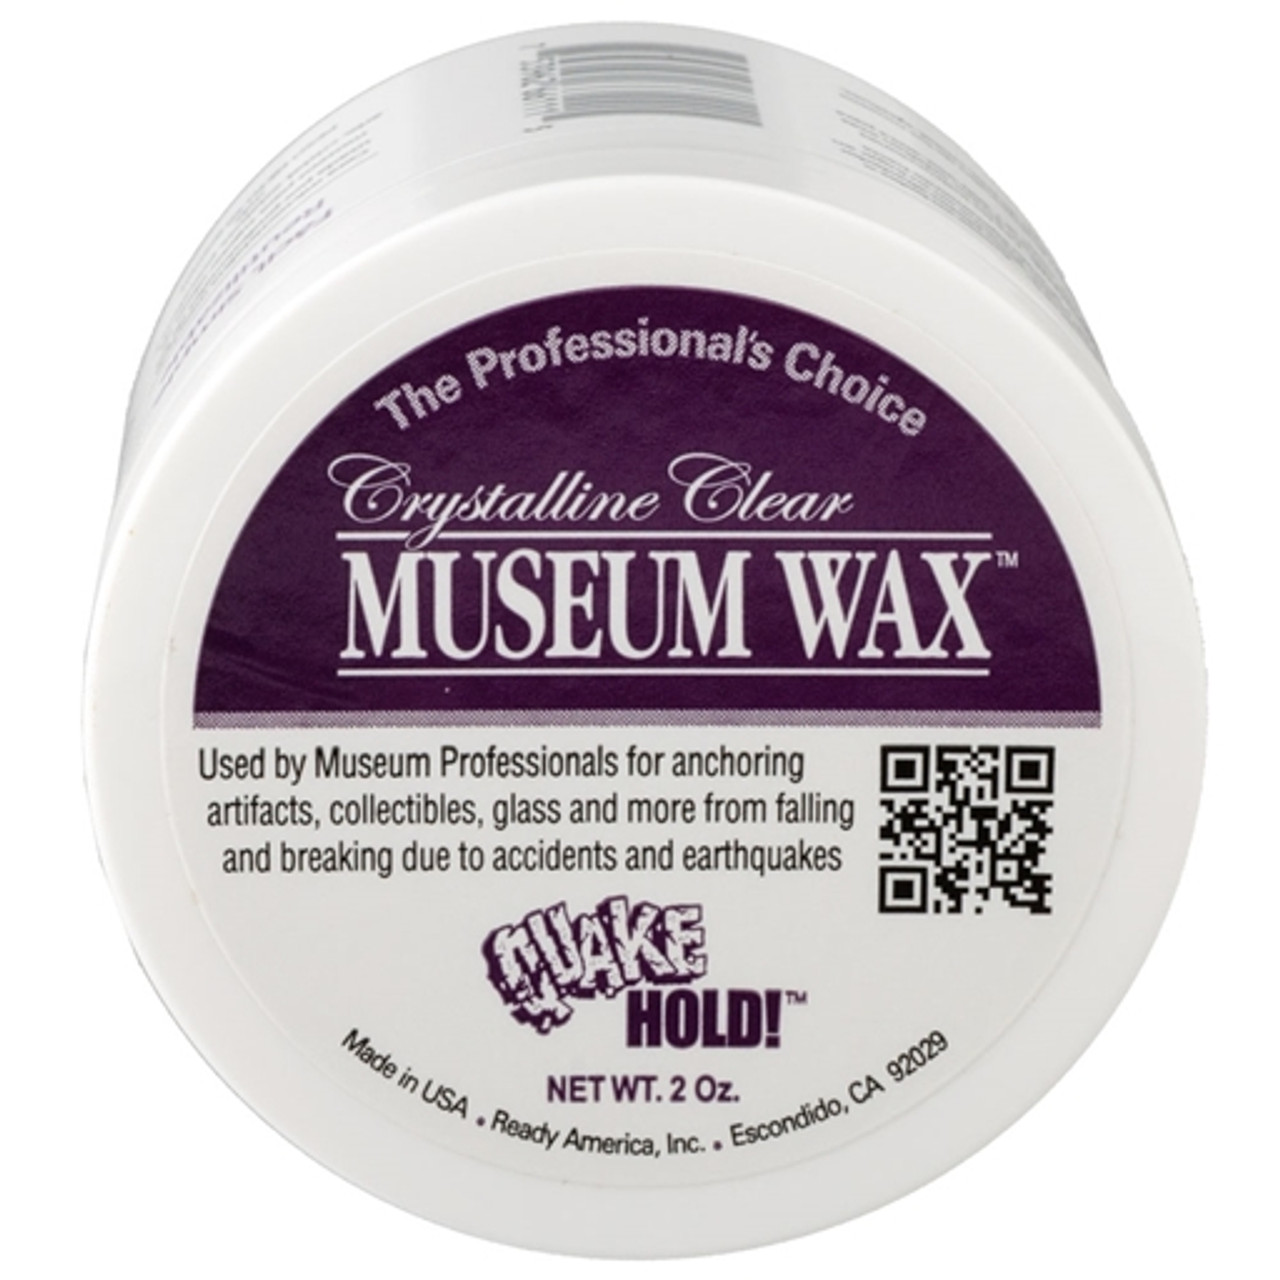  Museum Wax